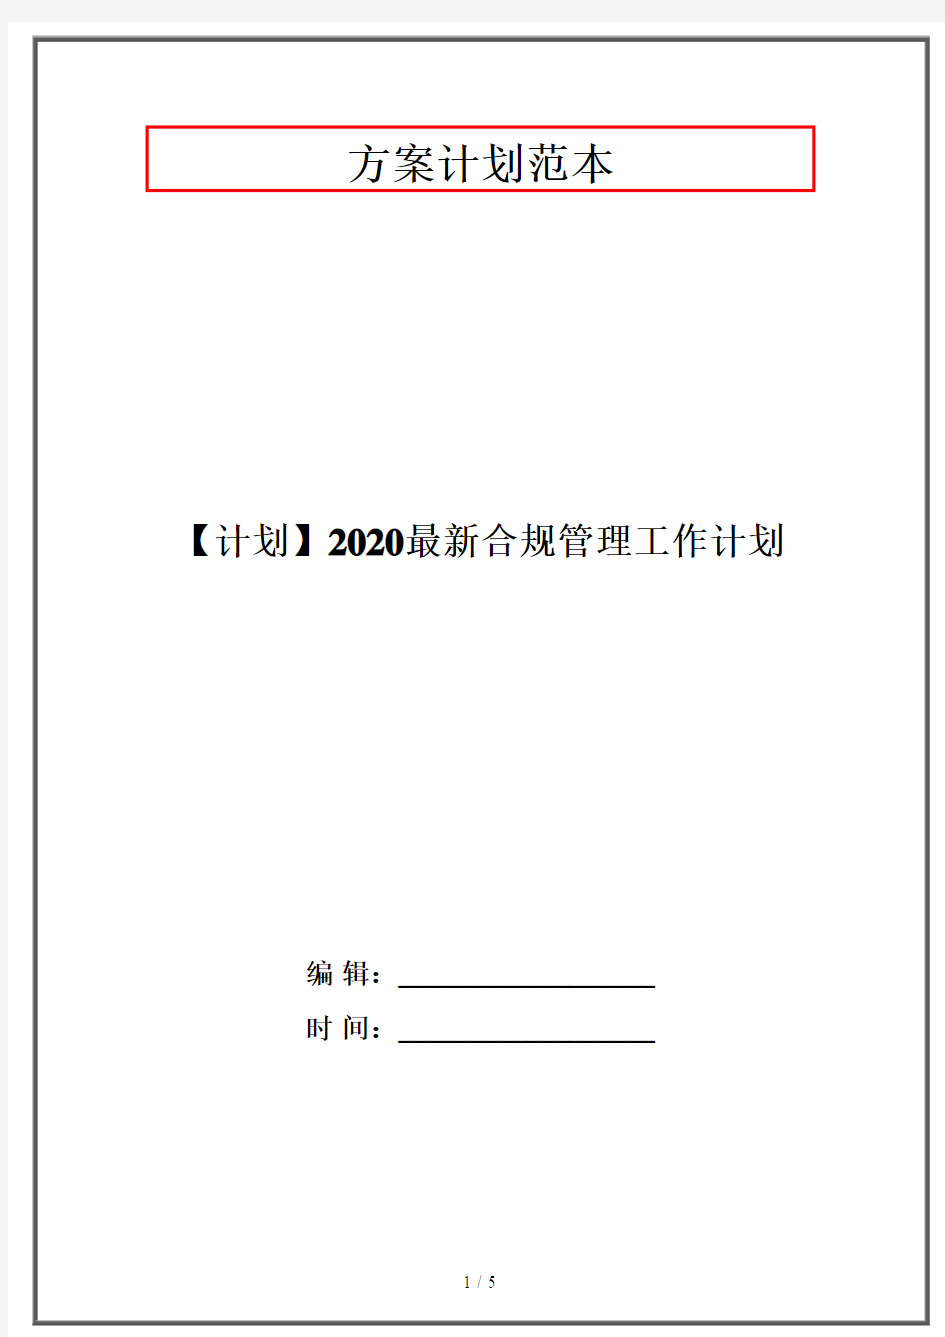 【计划】2020最新合规管理工作计划